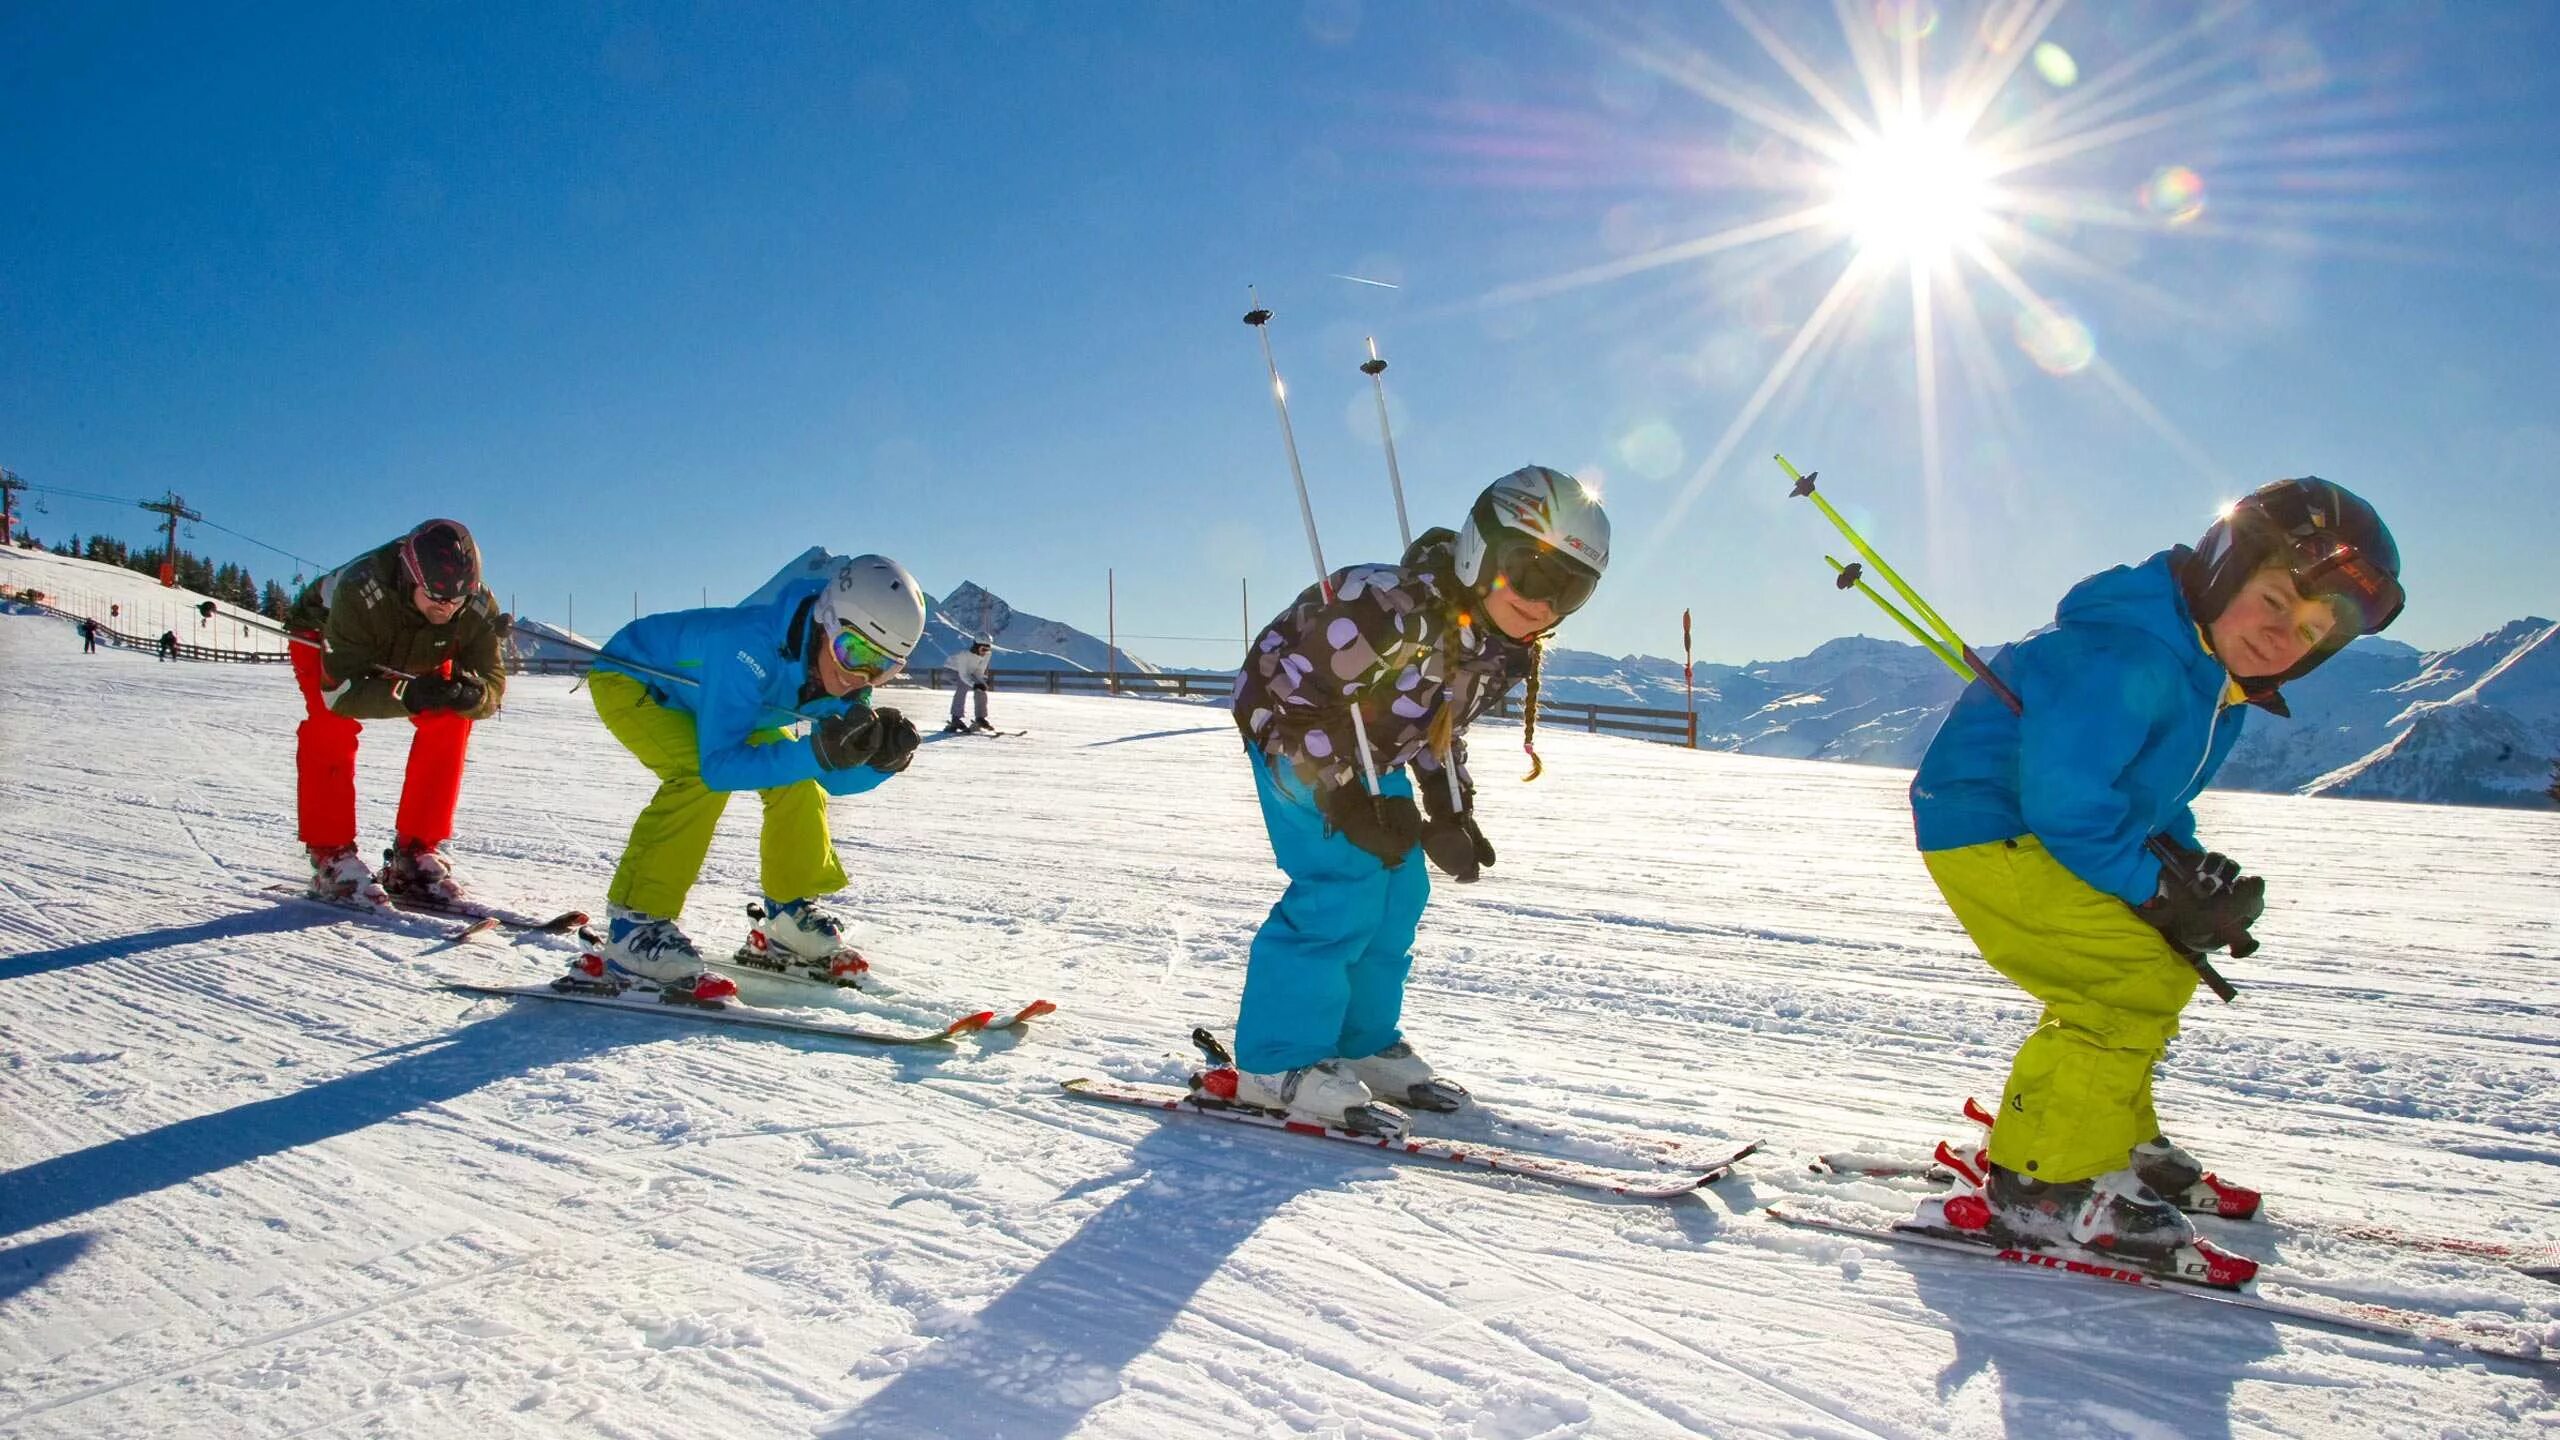 Лыжный спорт дети. Горнолыжный спорт дети. Катание на лыжах. Катание на лыжах дети. Занятий зимними видами спорта